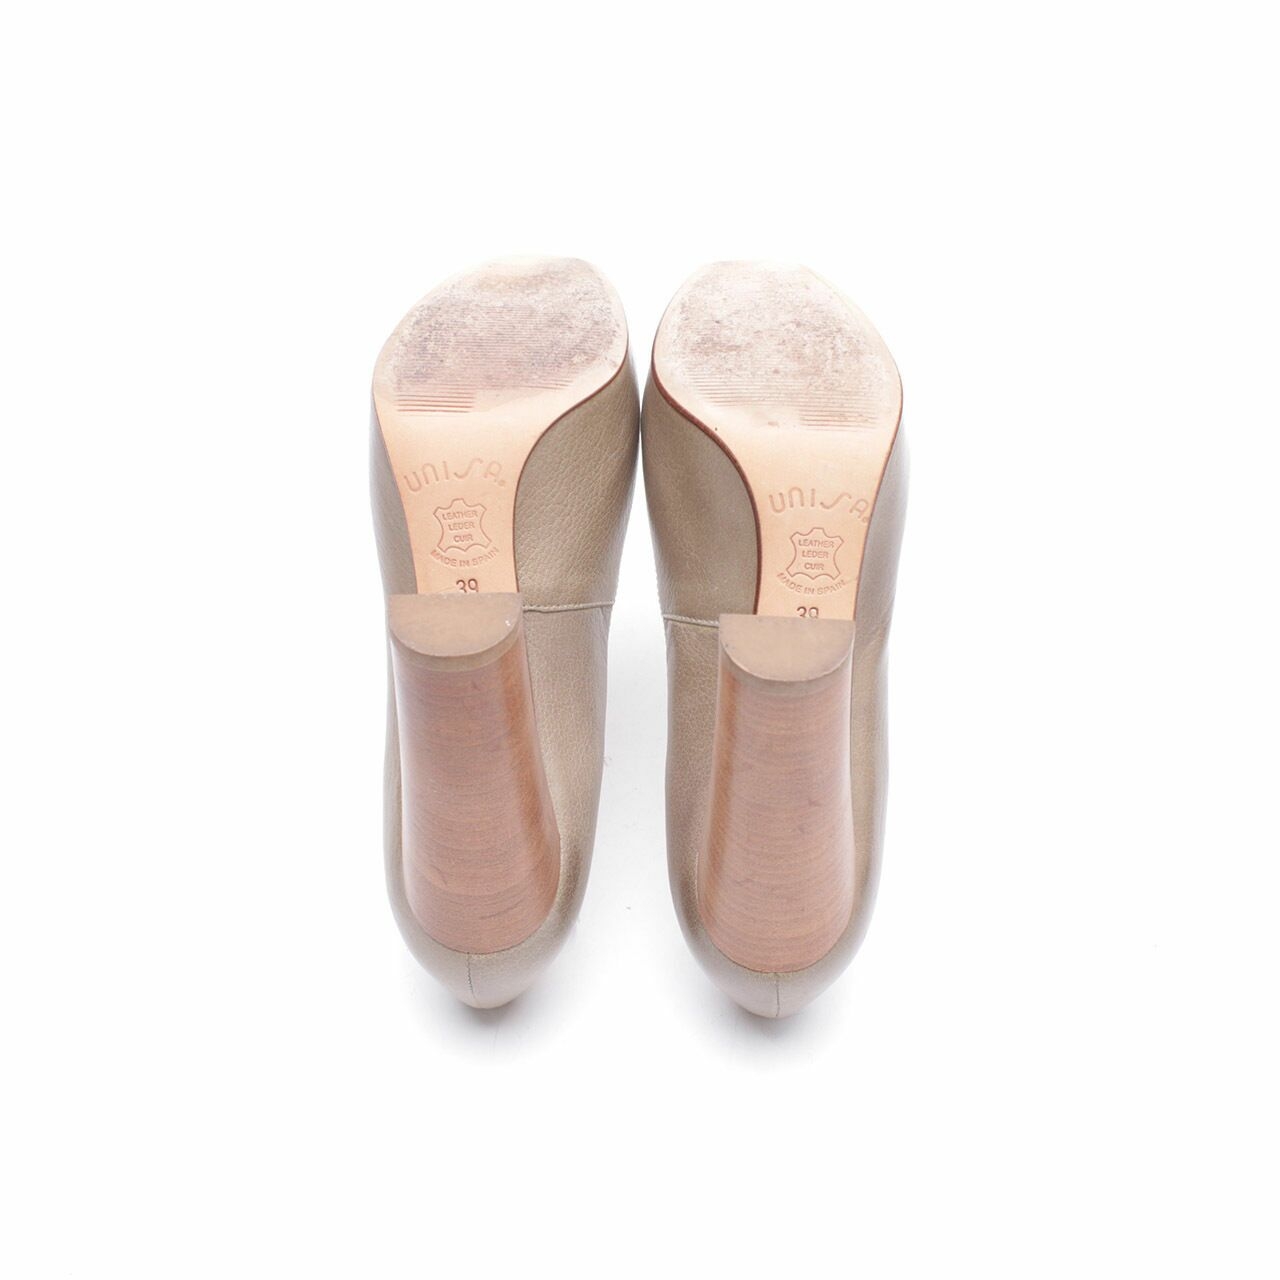 Unisa Olive Leather Heels